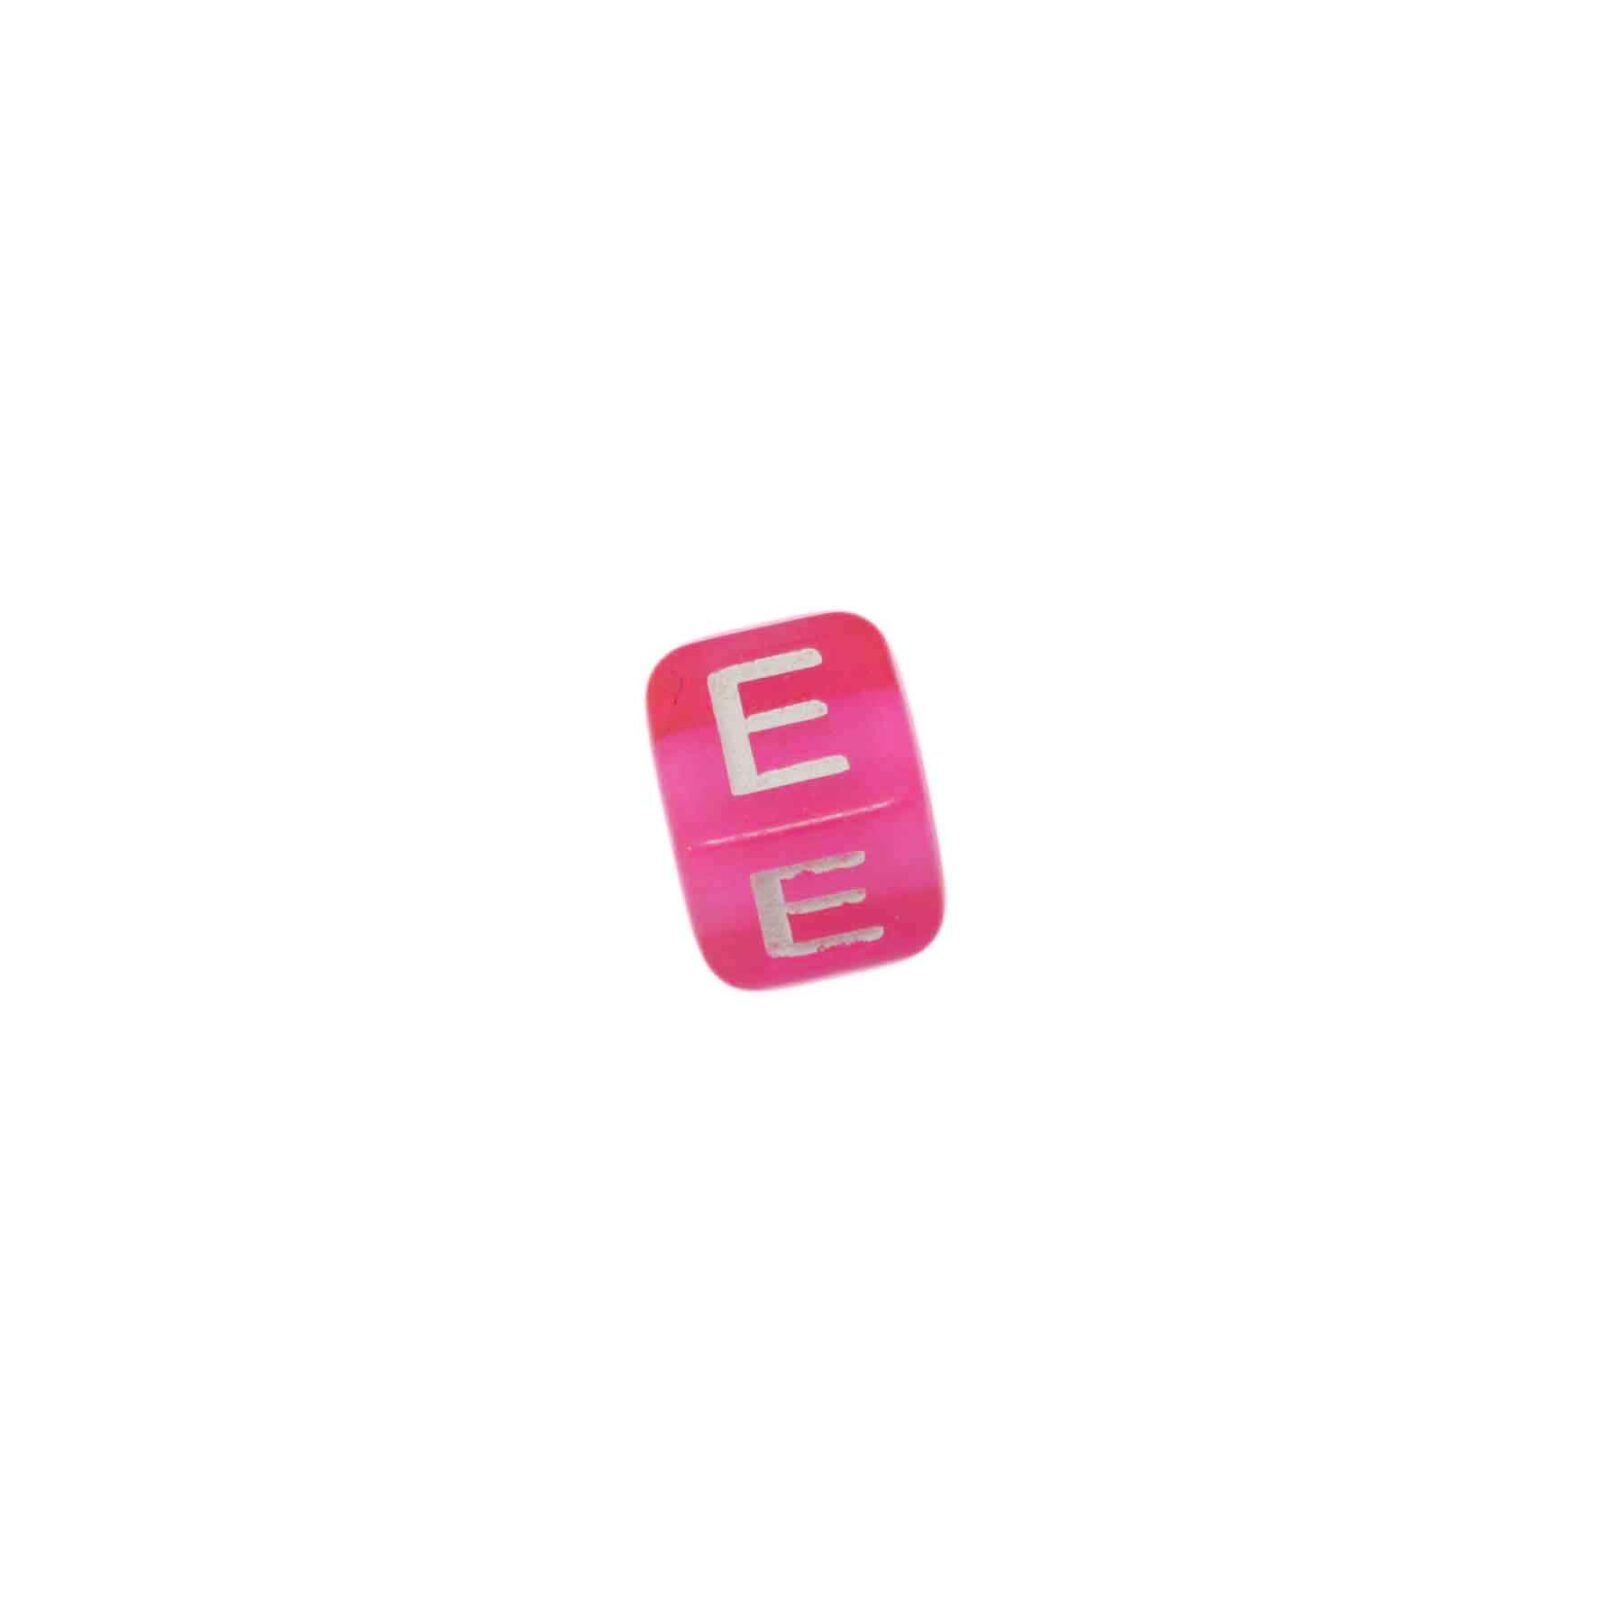 Rood roze letterkraal E